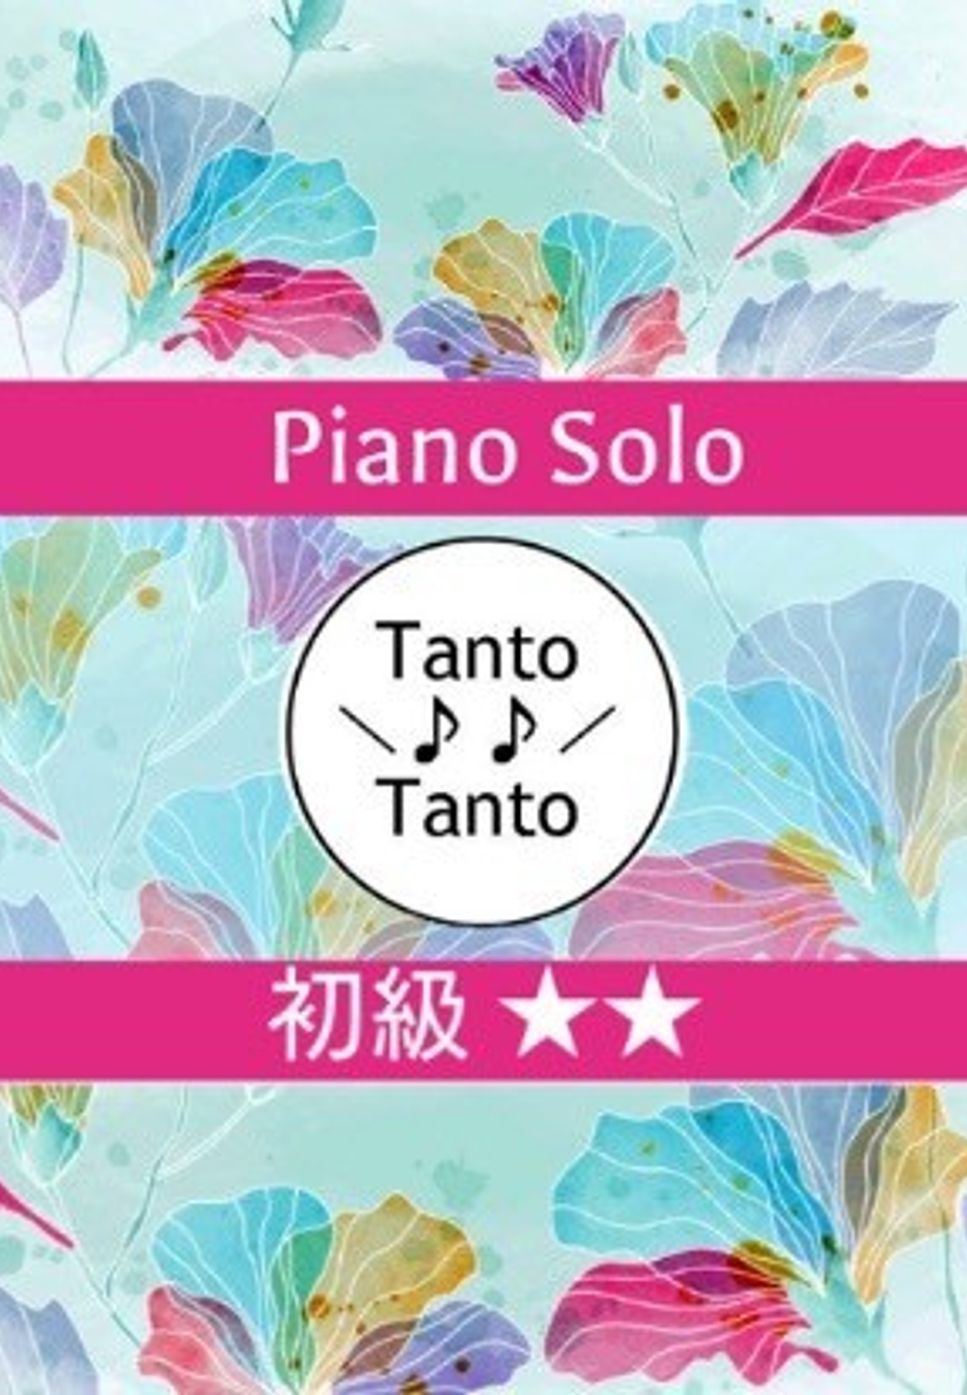 久石 譲 - ねこバス Catbus (となりのトトロより Piano Solo in G) by Tanto Tanto